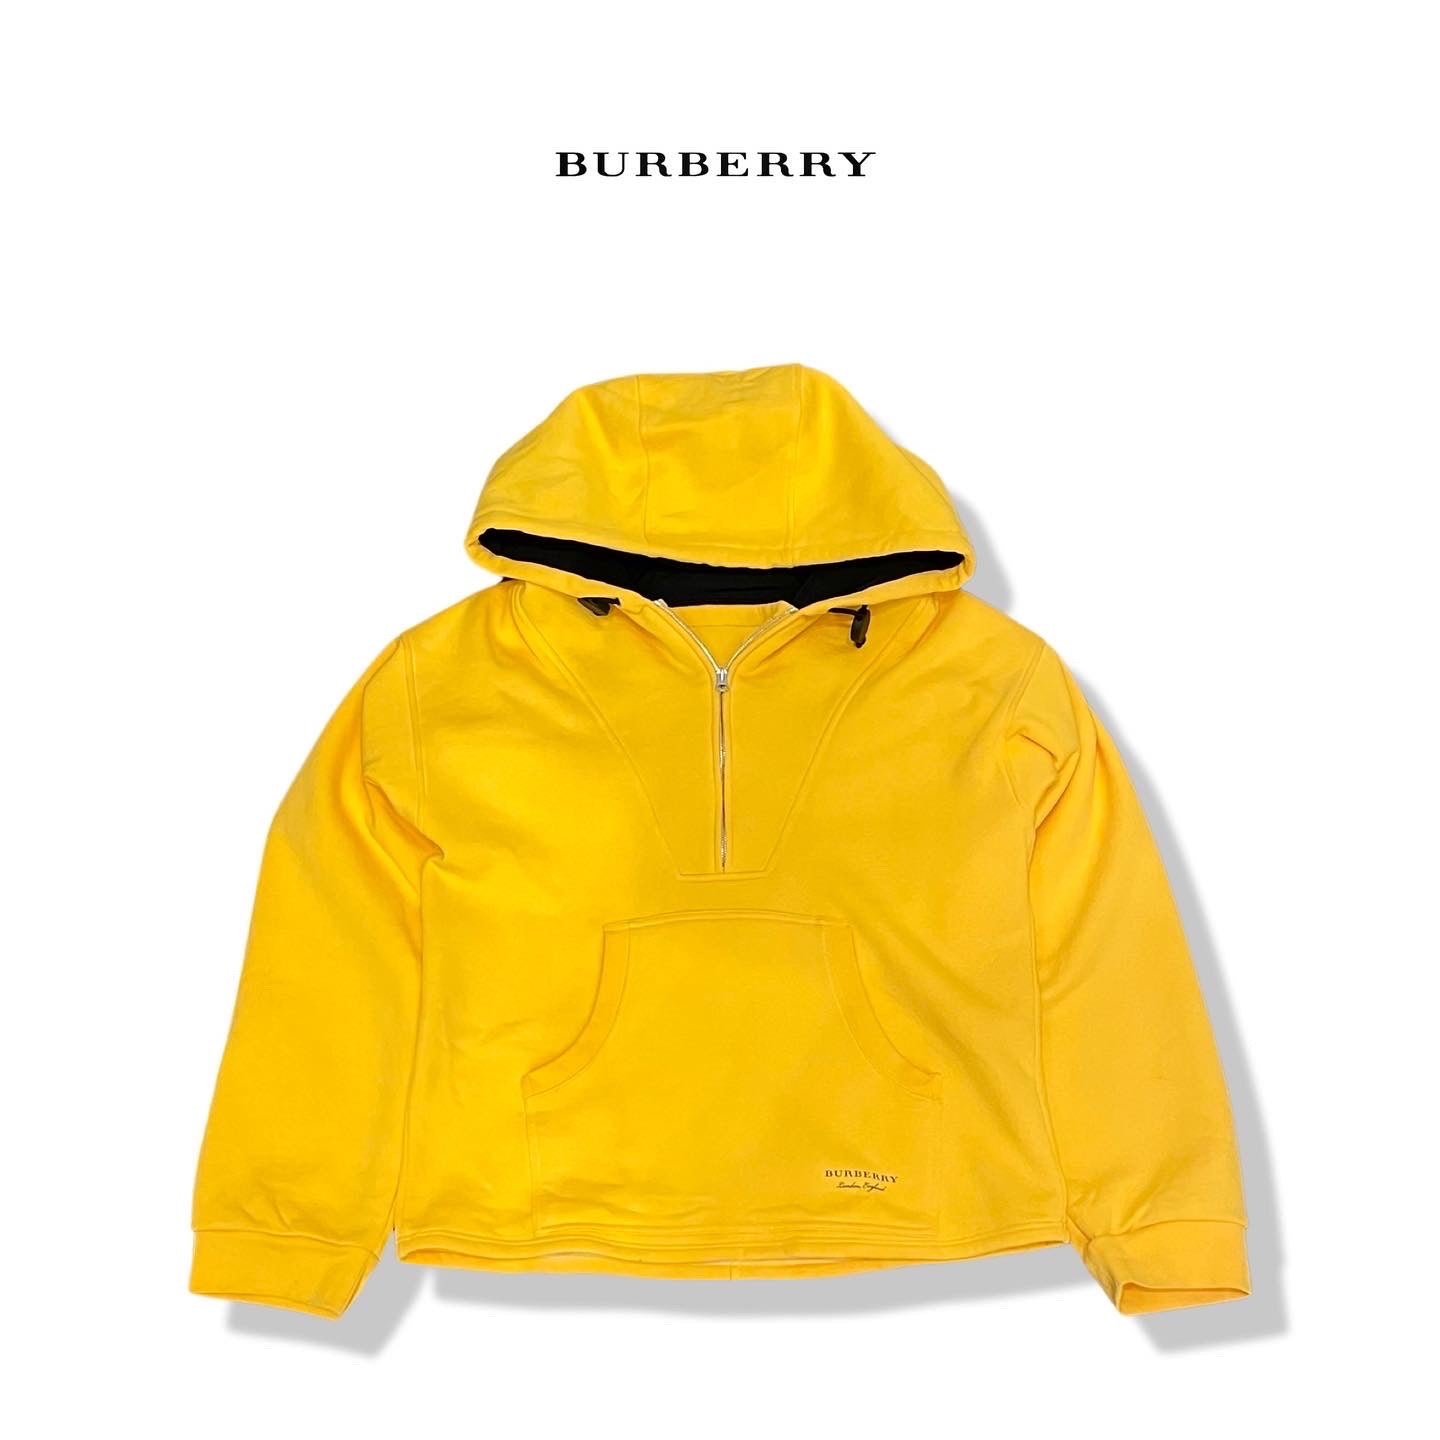 Burberrys hoodies